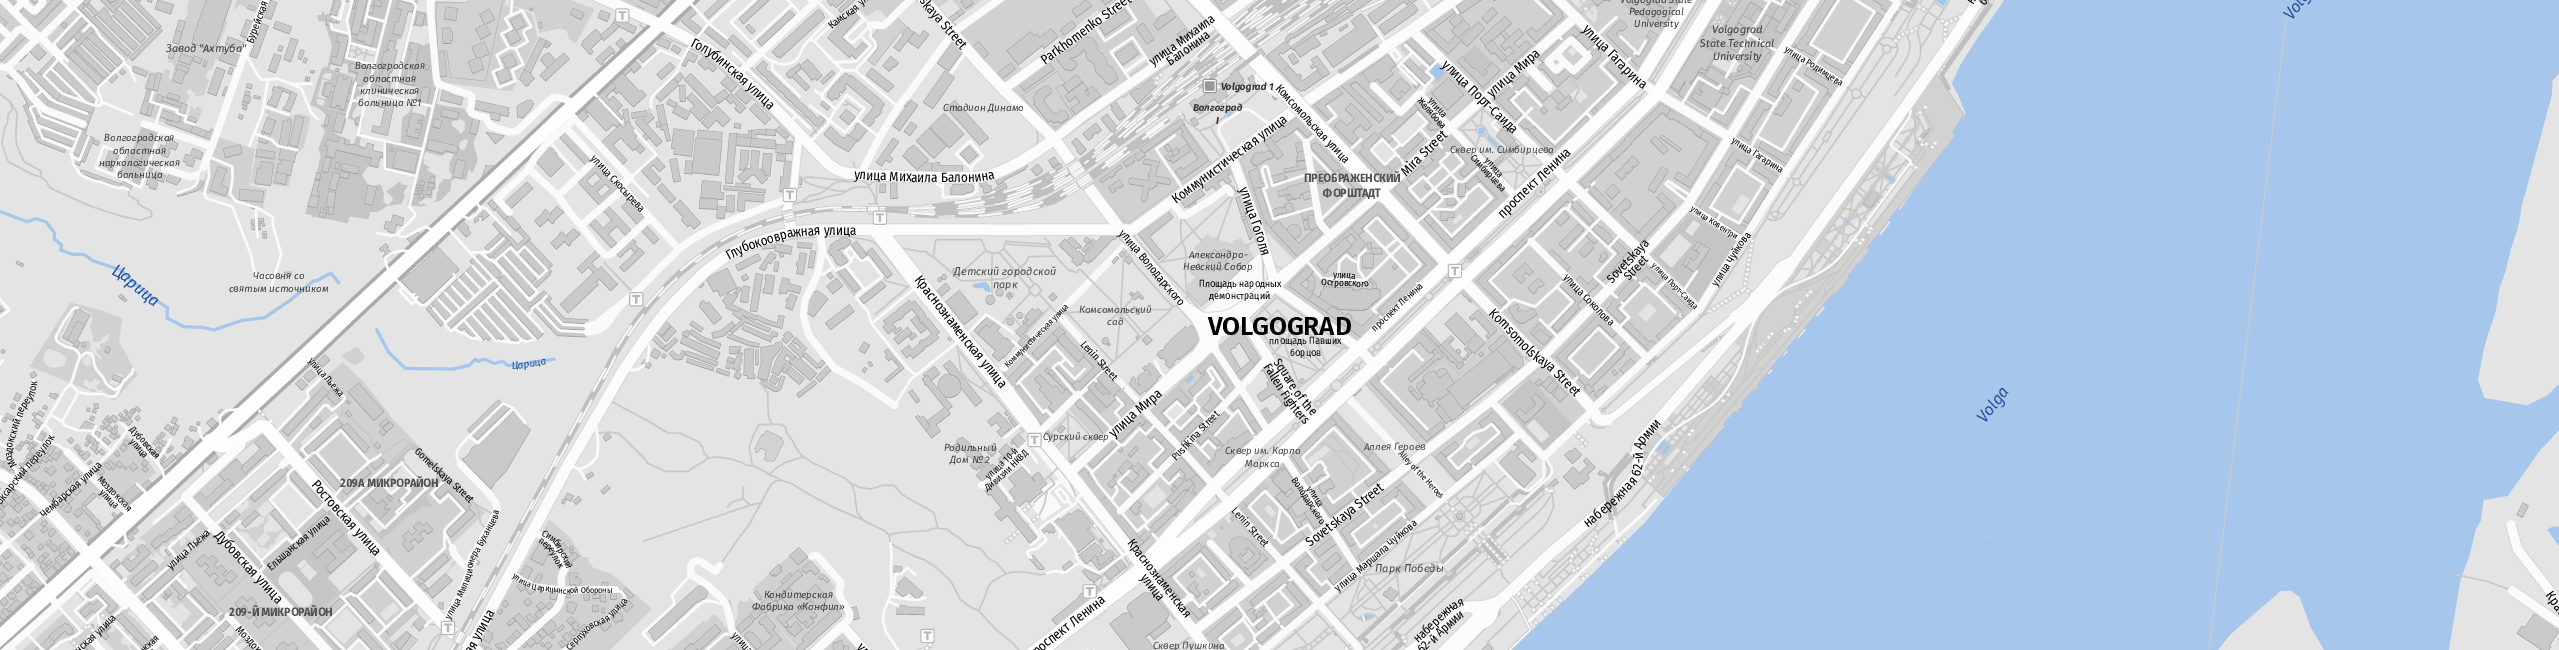 Stadtplan Wolgograd zum Downloaden.